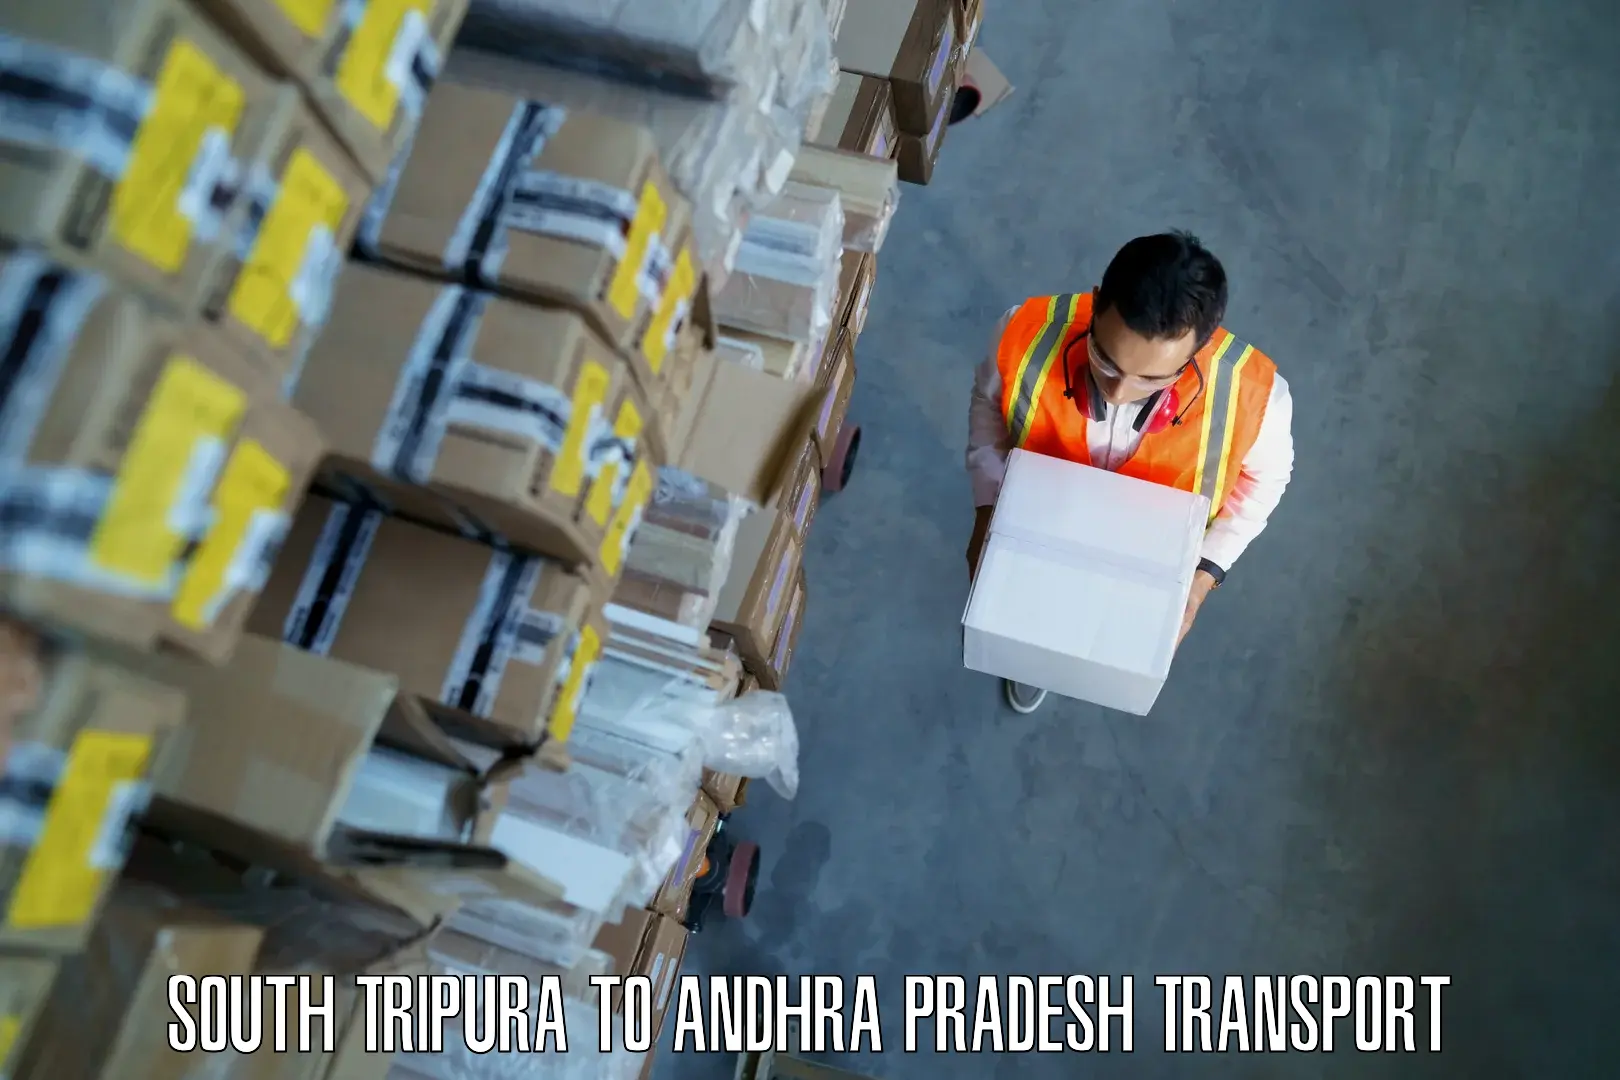 Bike transport service South Tripura to Puttur Tirupati